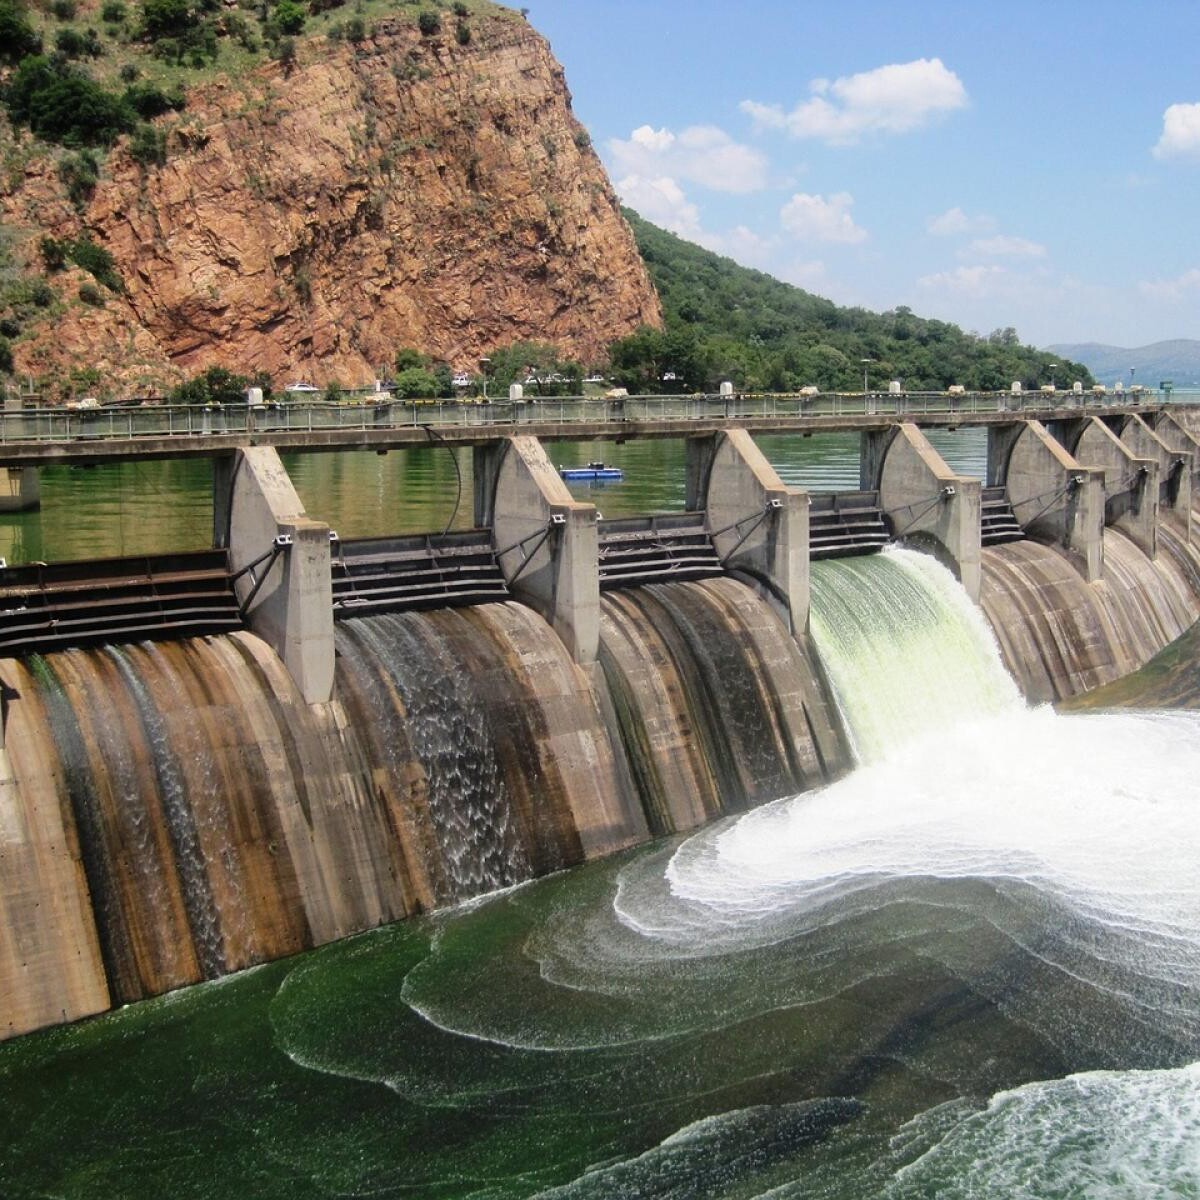 A photo of a dam